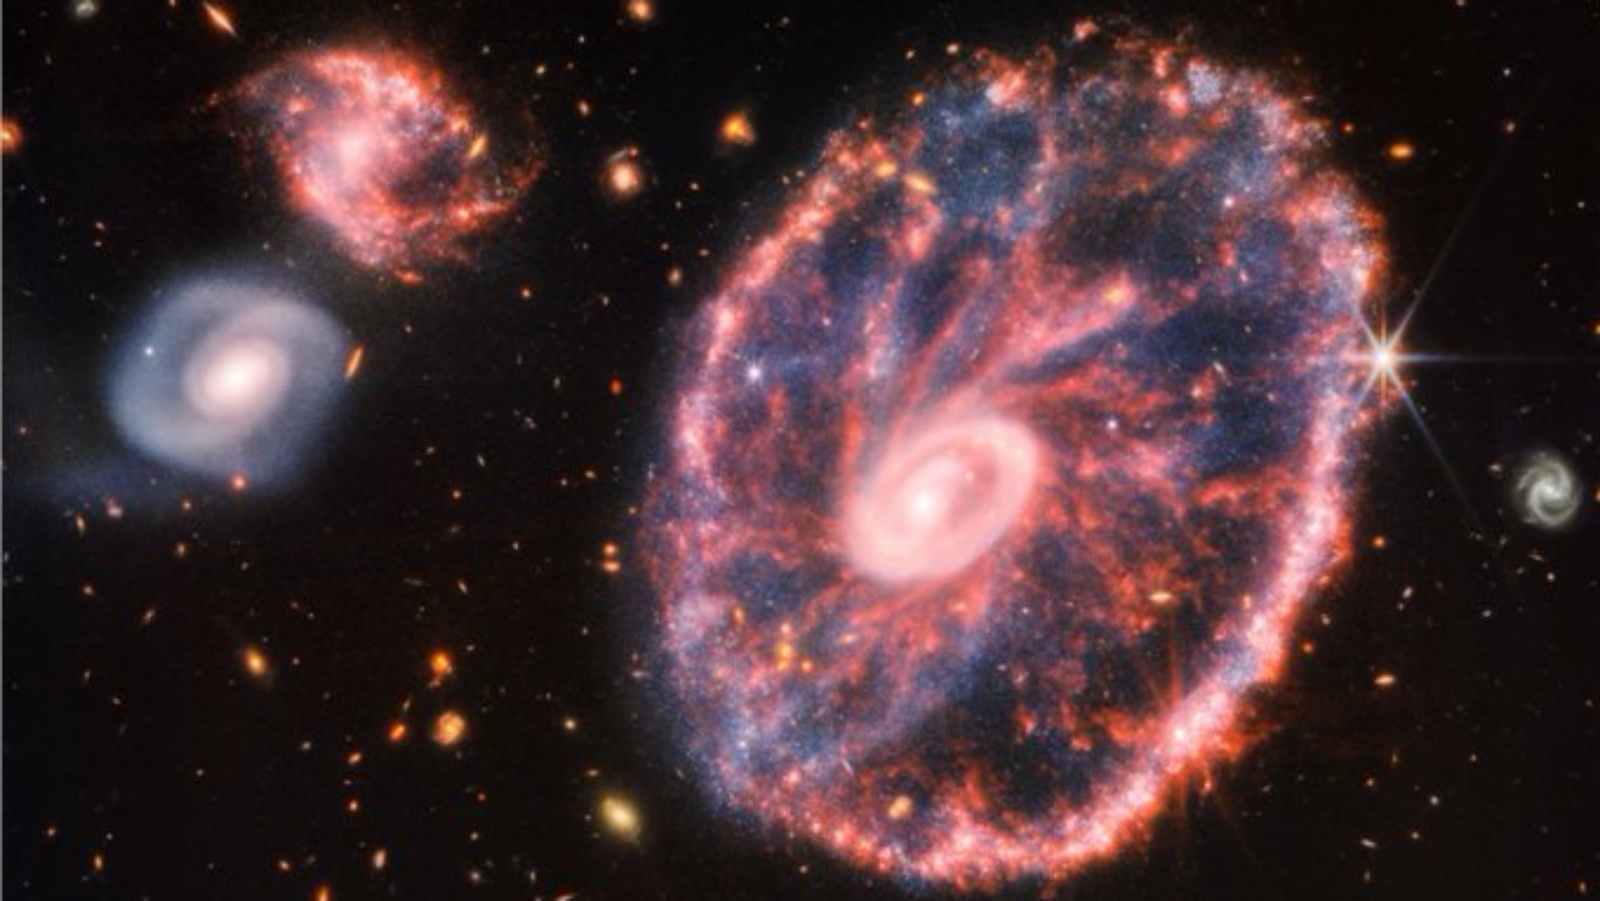 صورة نادرة لمجرّة تبعد 500 مليون سنة ضوئية هي مجرّة عجلة العربة التي تظهر حلقاتها بوضوح (صفحة ناسا الرسمية في تويتر)